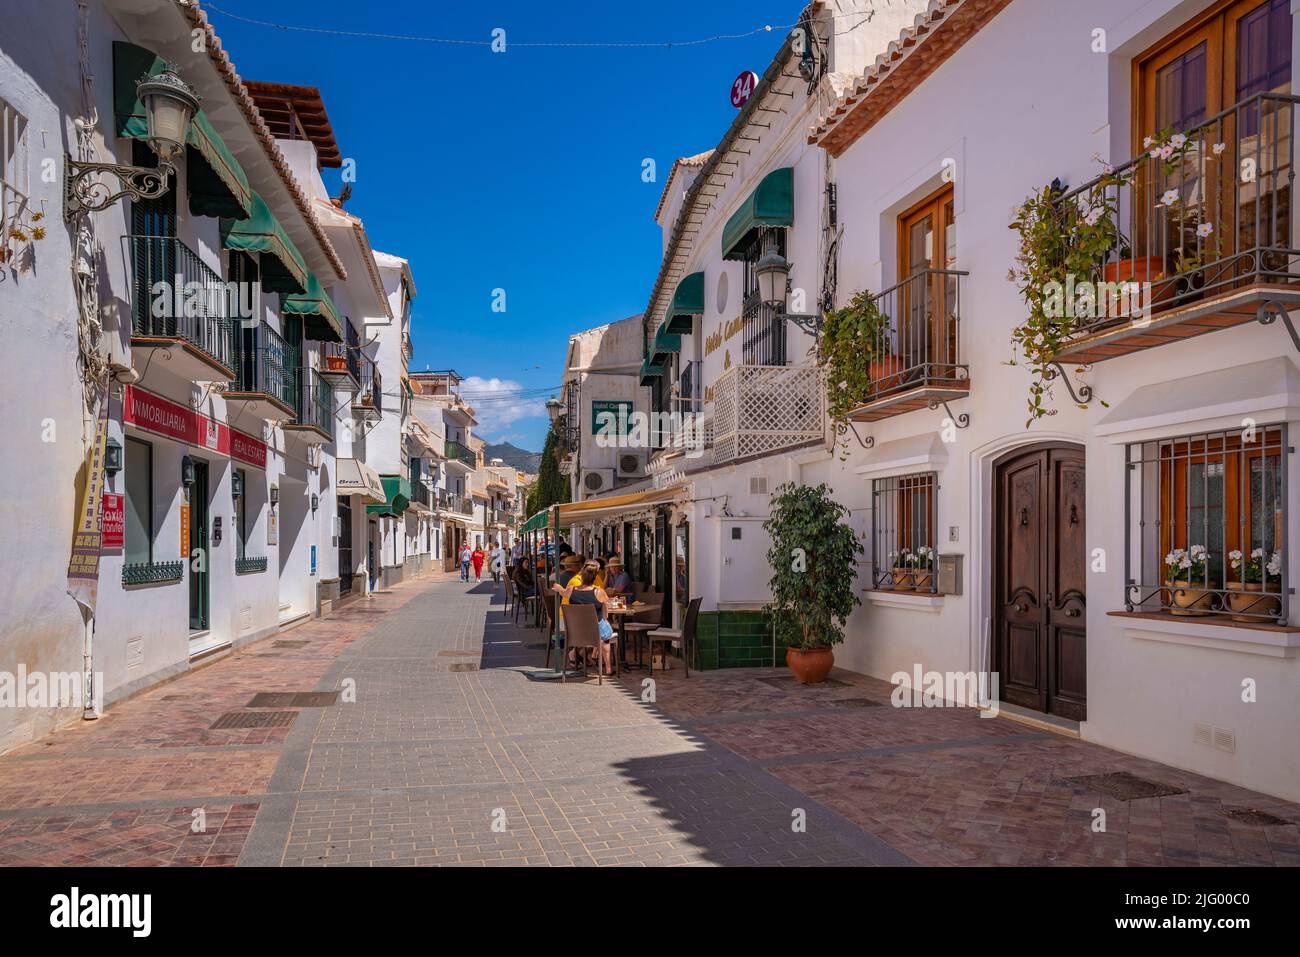 Blick auf Cafés und Restaurants in der Altstadt von Nerja, Nerja, Costa del Sol, Provinz Malaga, Andalusien, Spanien, Mittelmeer, Europa Stockfoto